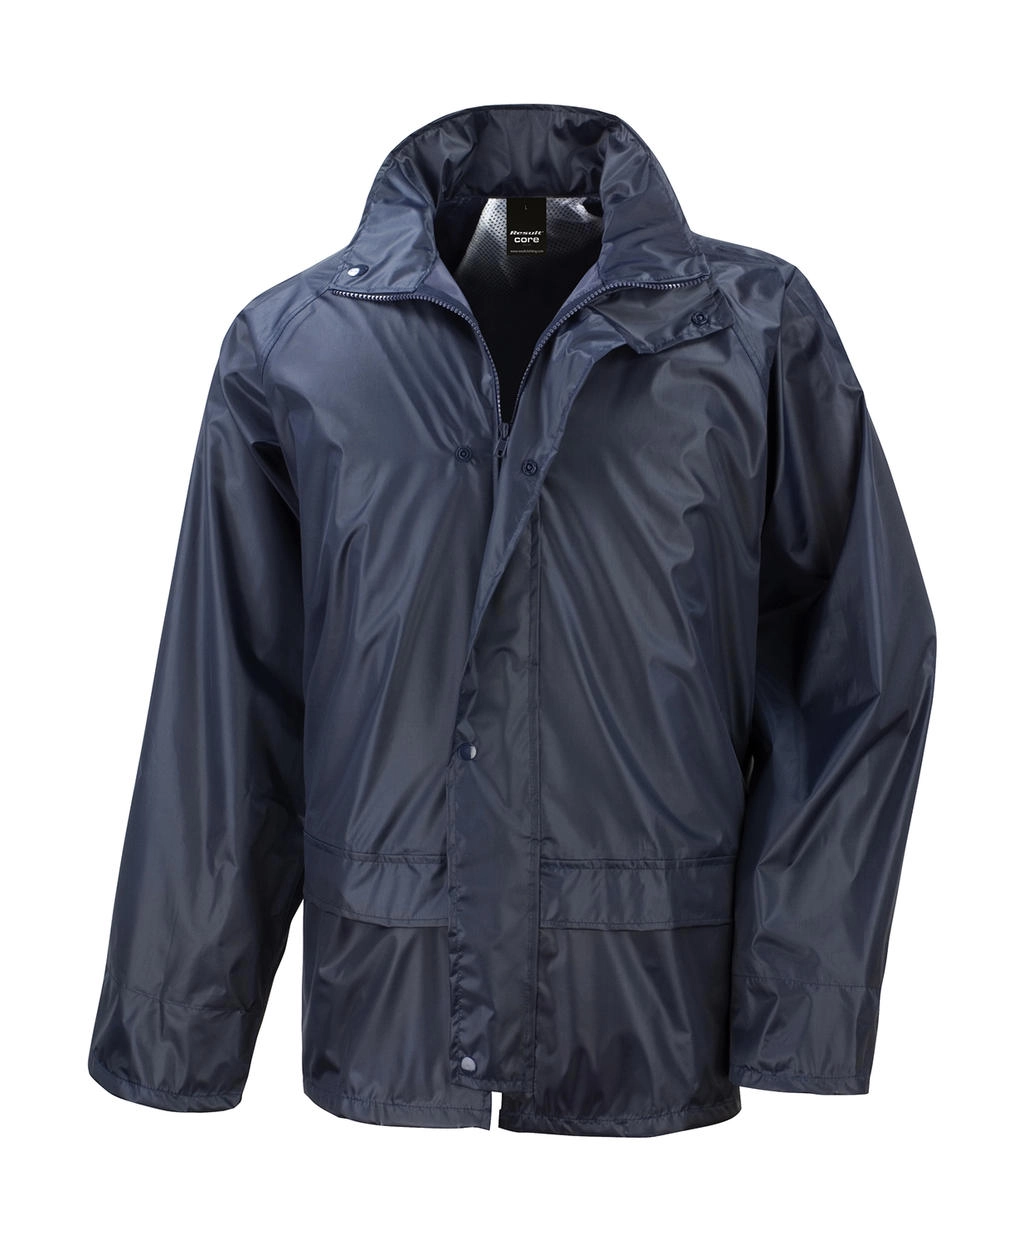 StormDri Jacket zum Besticken und Bedrucken in der Farbe Navy mit Ihren Logo, Schriftzug oder Motiv.